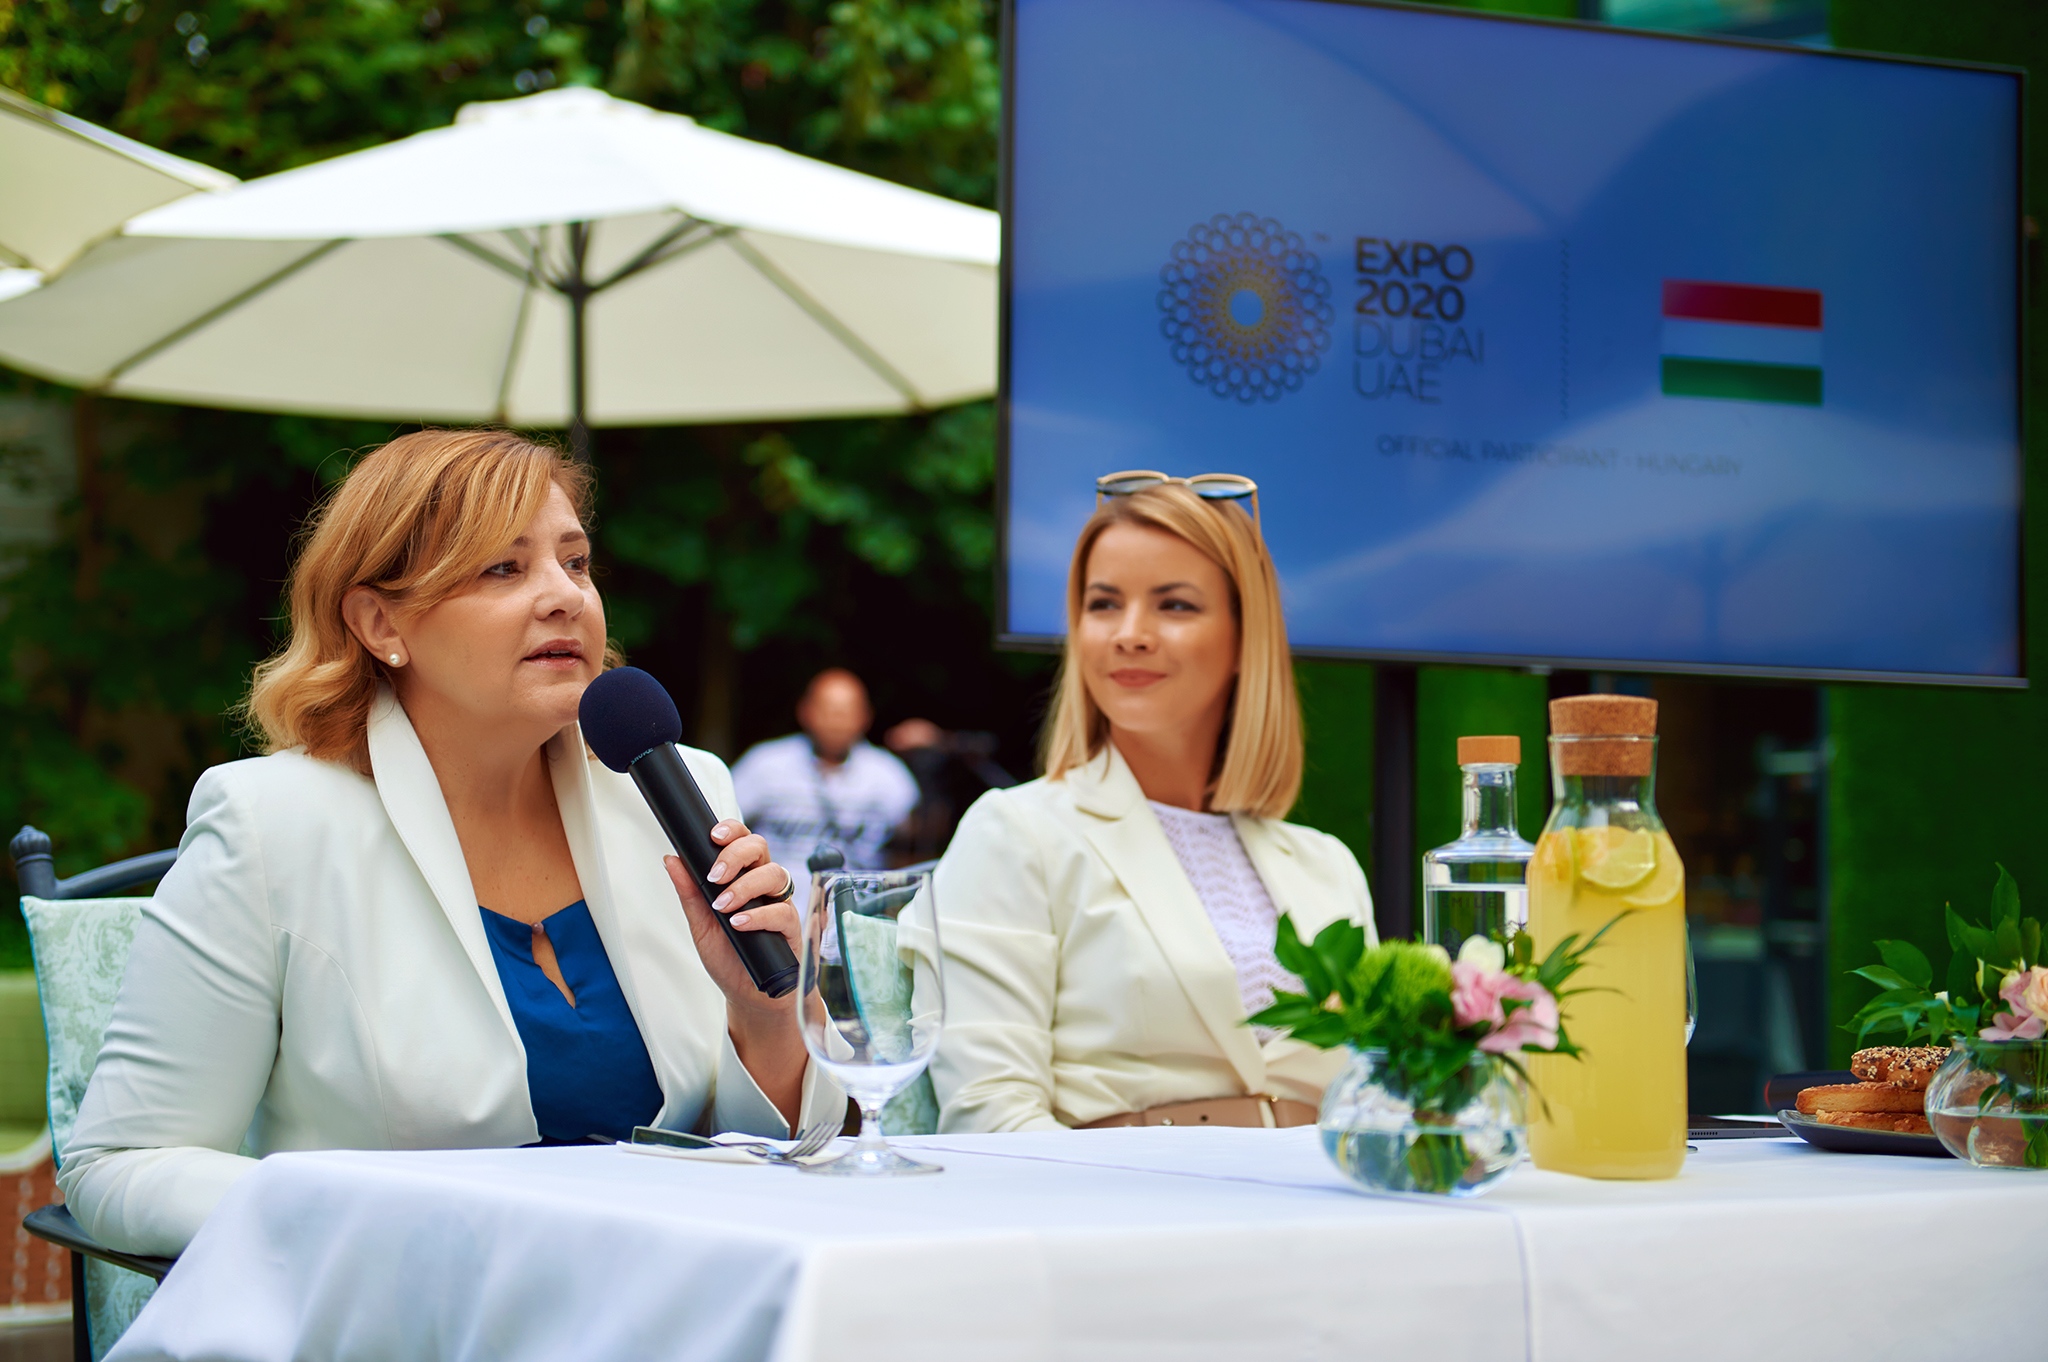 Az Expo 2020 Magyarország ügyvezetője, Tóth Andrea (balra) és  Bata-Jakab Zsófia, a Magyar Divat & Design Ügynökség vezérigazgatója (jobbra)